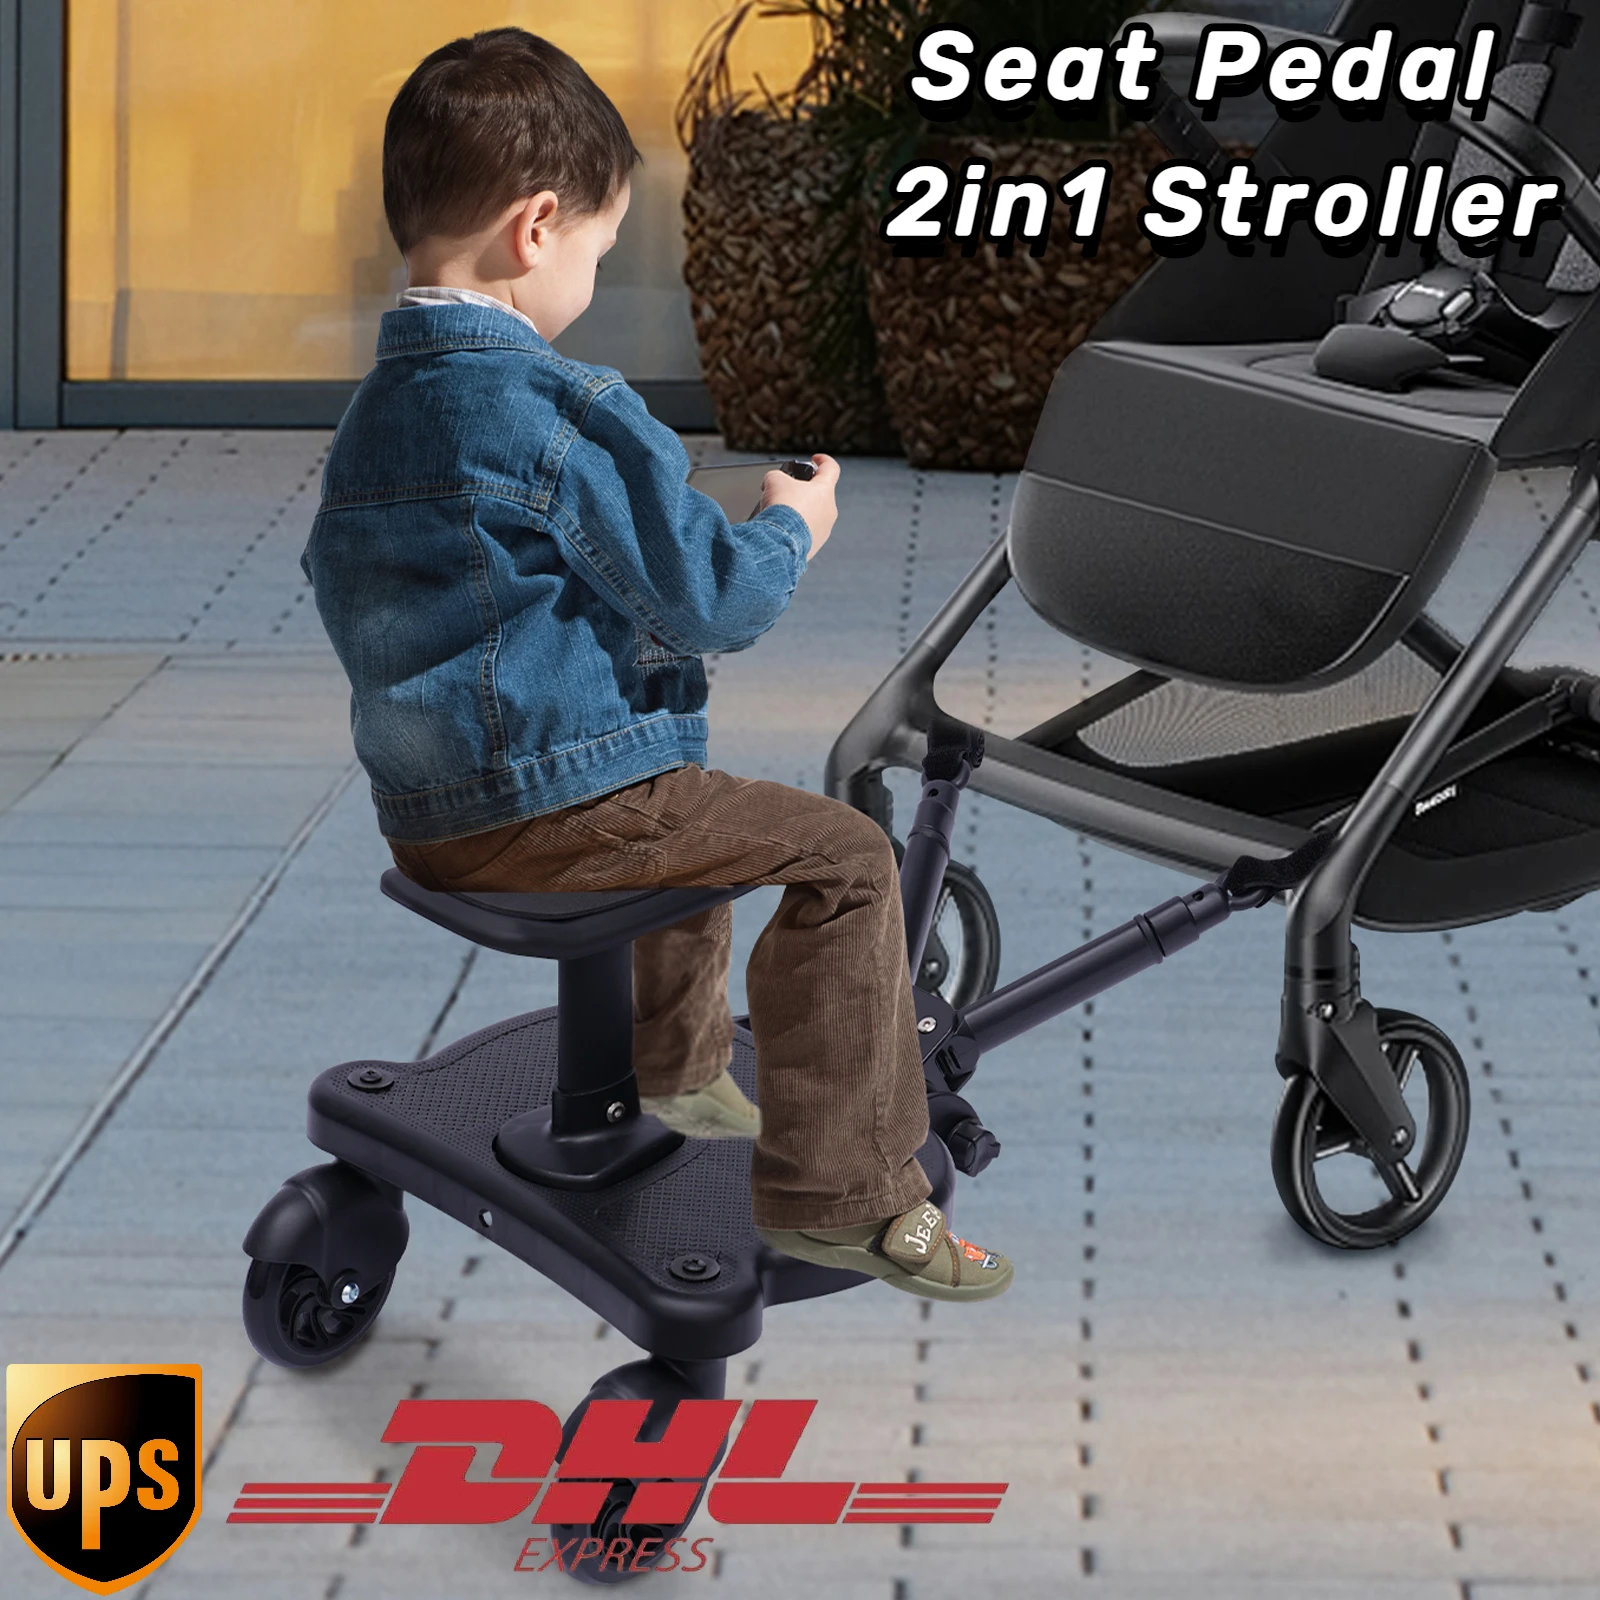 Tablero de cochecito Universal 2 en 1, Pedal de asiento con ruedas, Asiento desmontable, tablero de pie